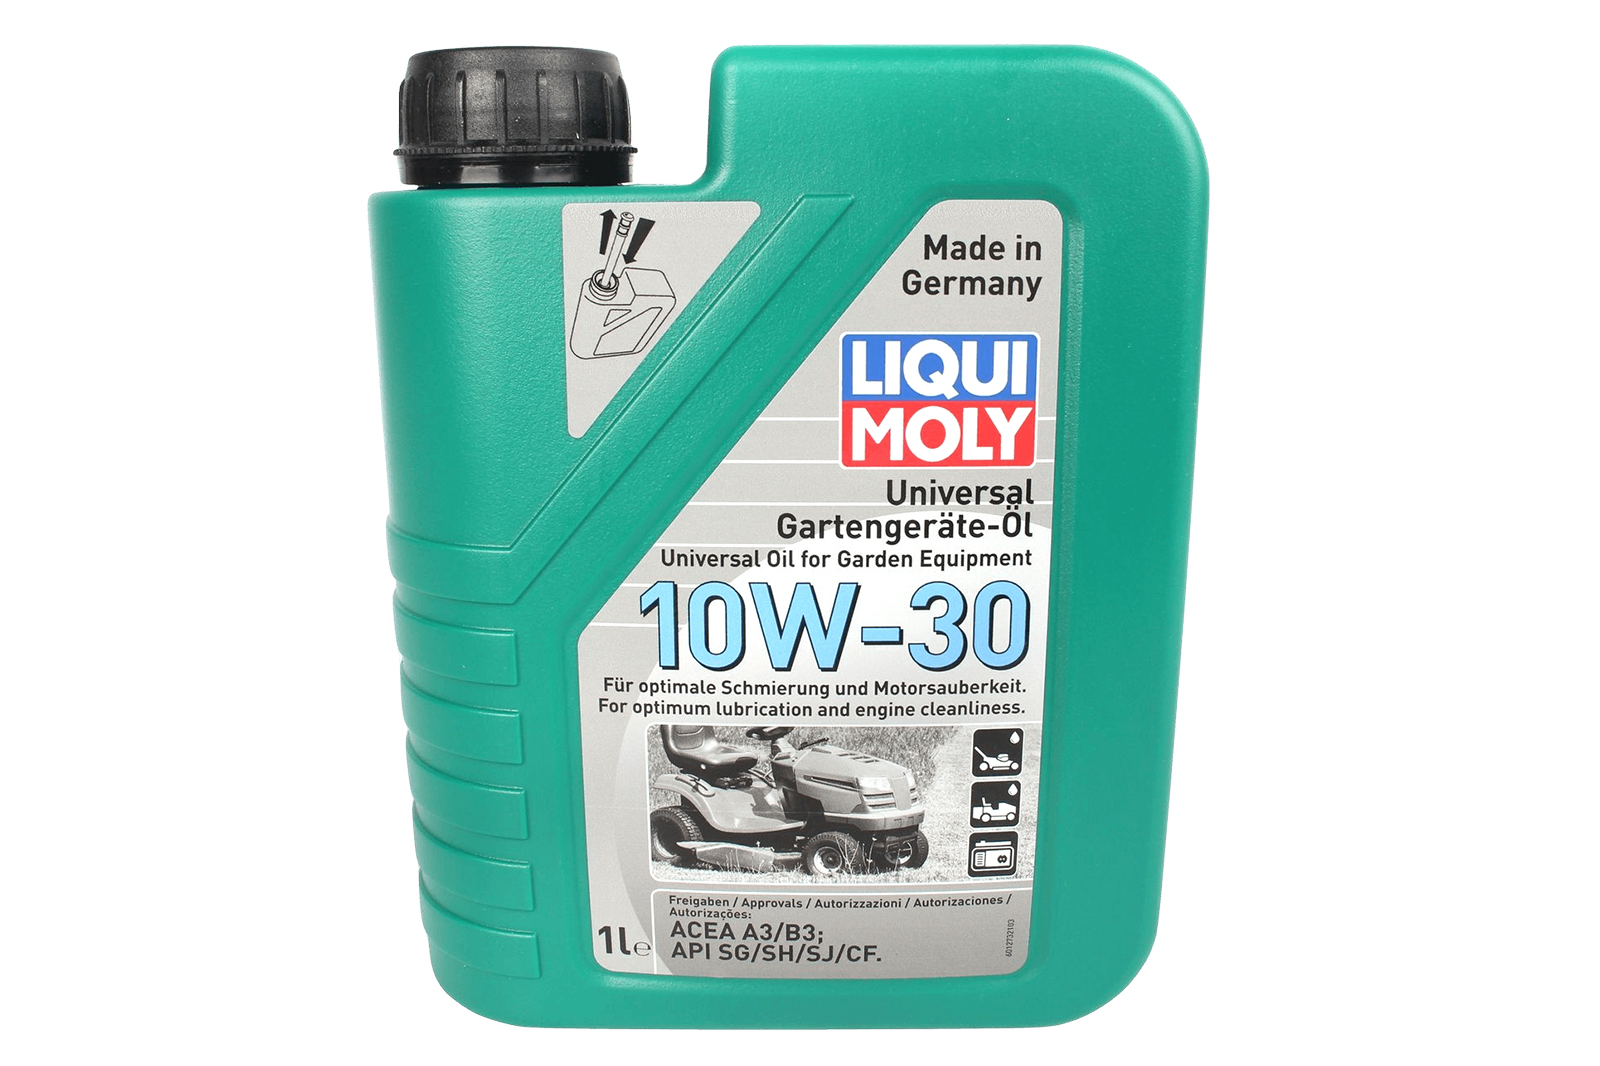 Масло моторное LIQUI MOLY  10W-30 Universal 4-Takt Gartengerate-Oil для газонокосилок 1л фотография №1